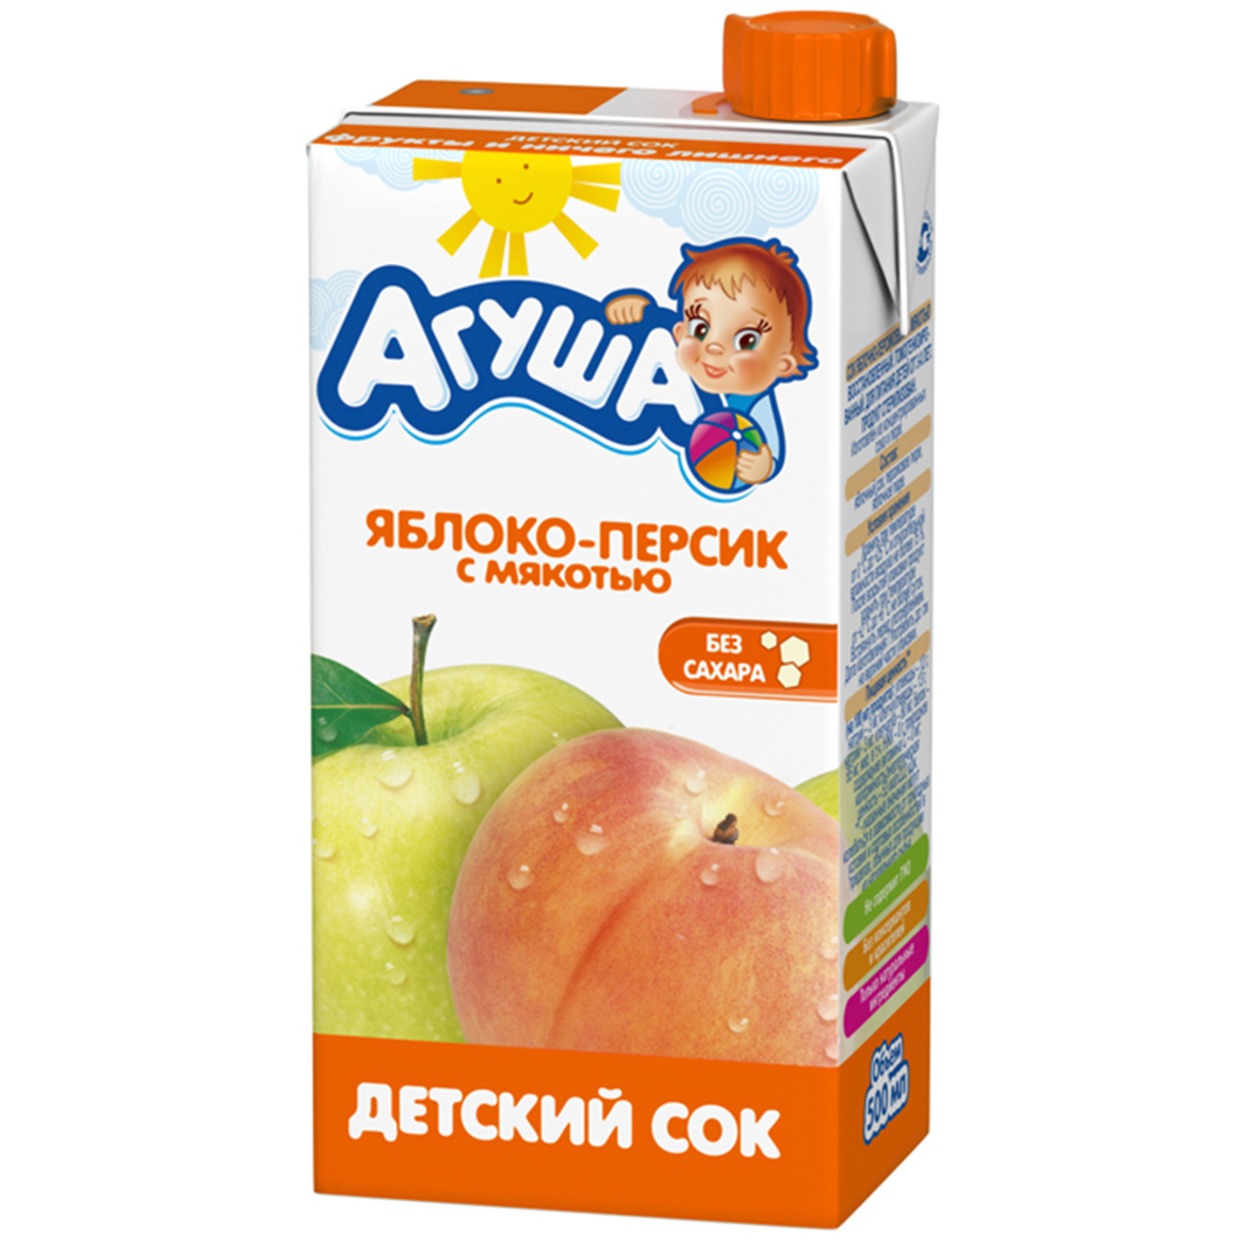 Сок Агуша Яблоко-персик с мякотью 500 мл по акции в Пятерочке